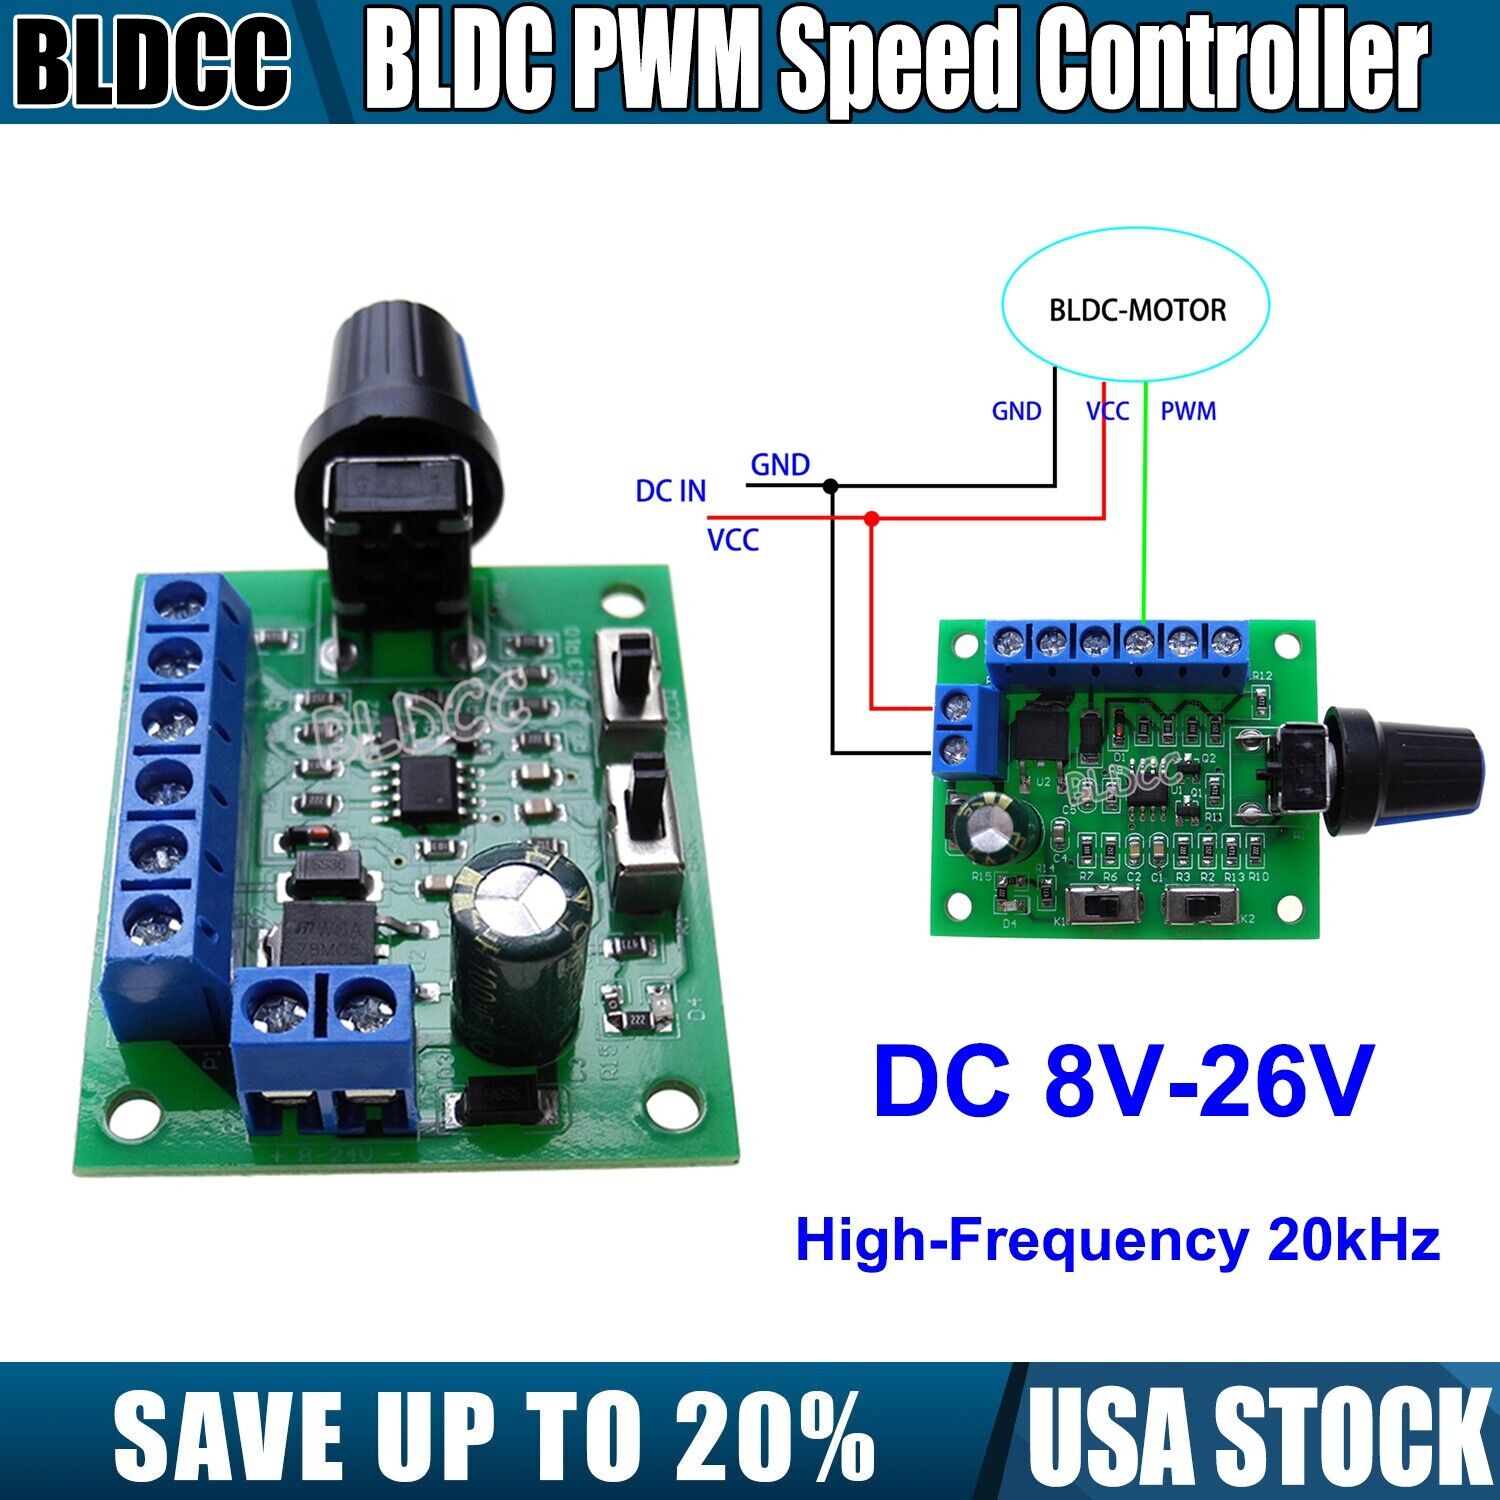 DC 12V/24V High-Frequency 20kHz BLDC PWM Speed Controller 8V-26V Speed Regulator